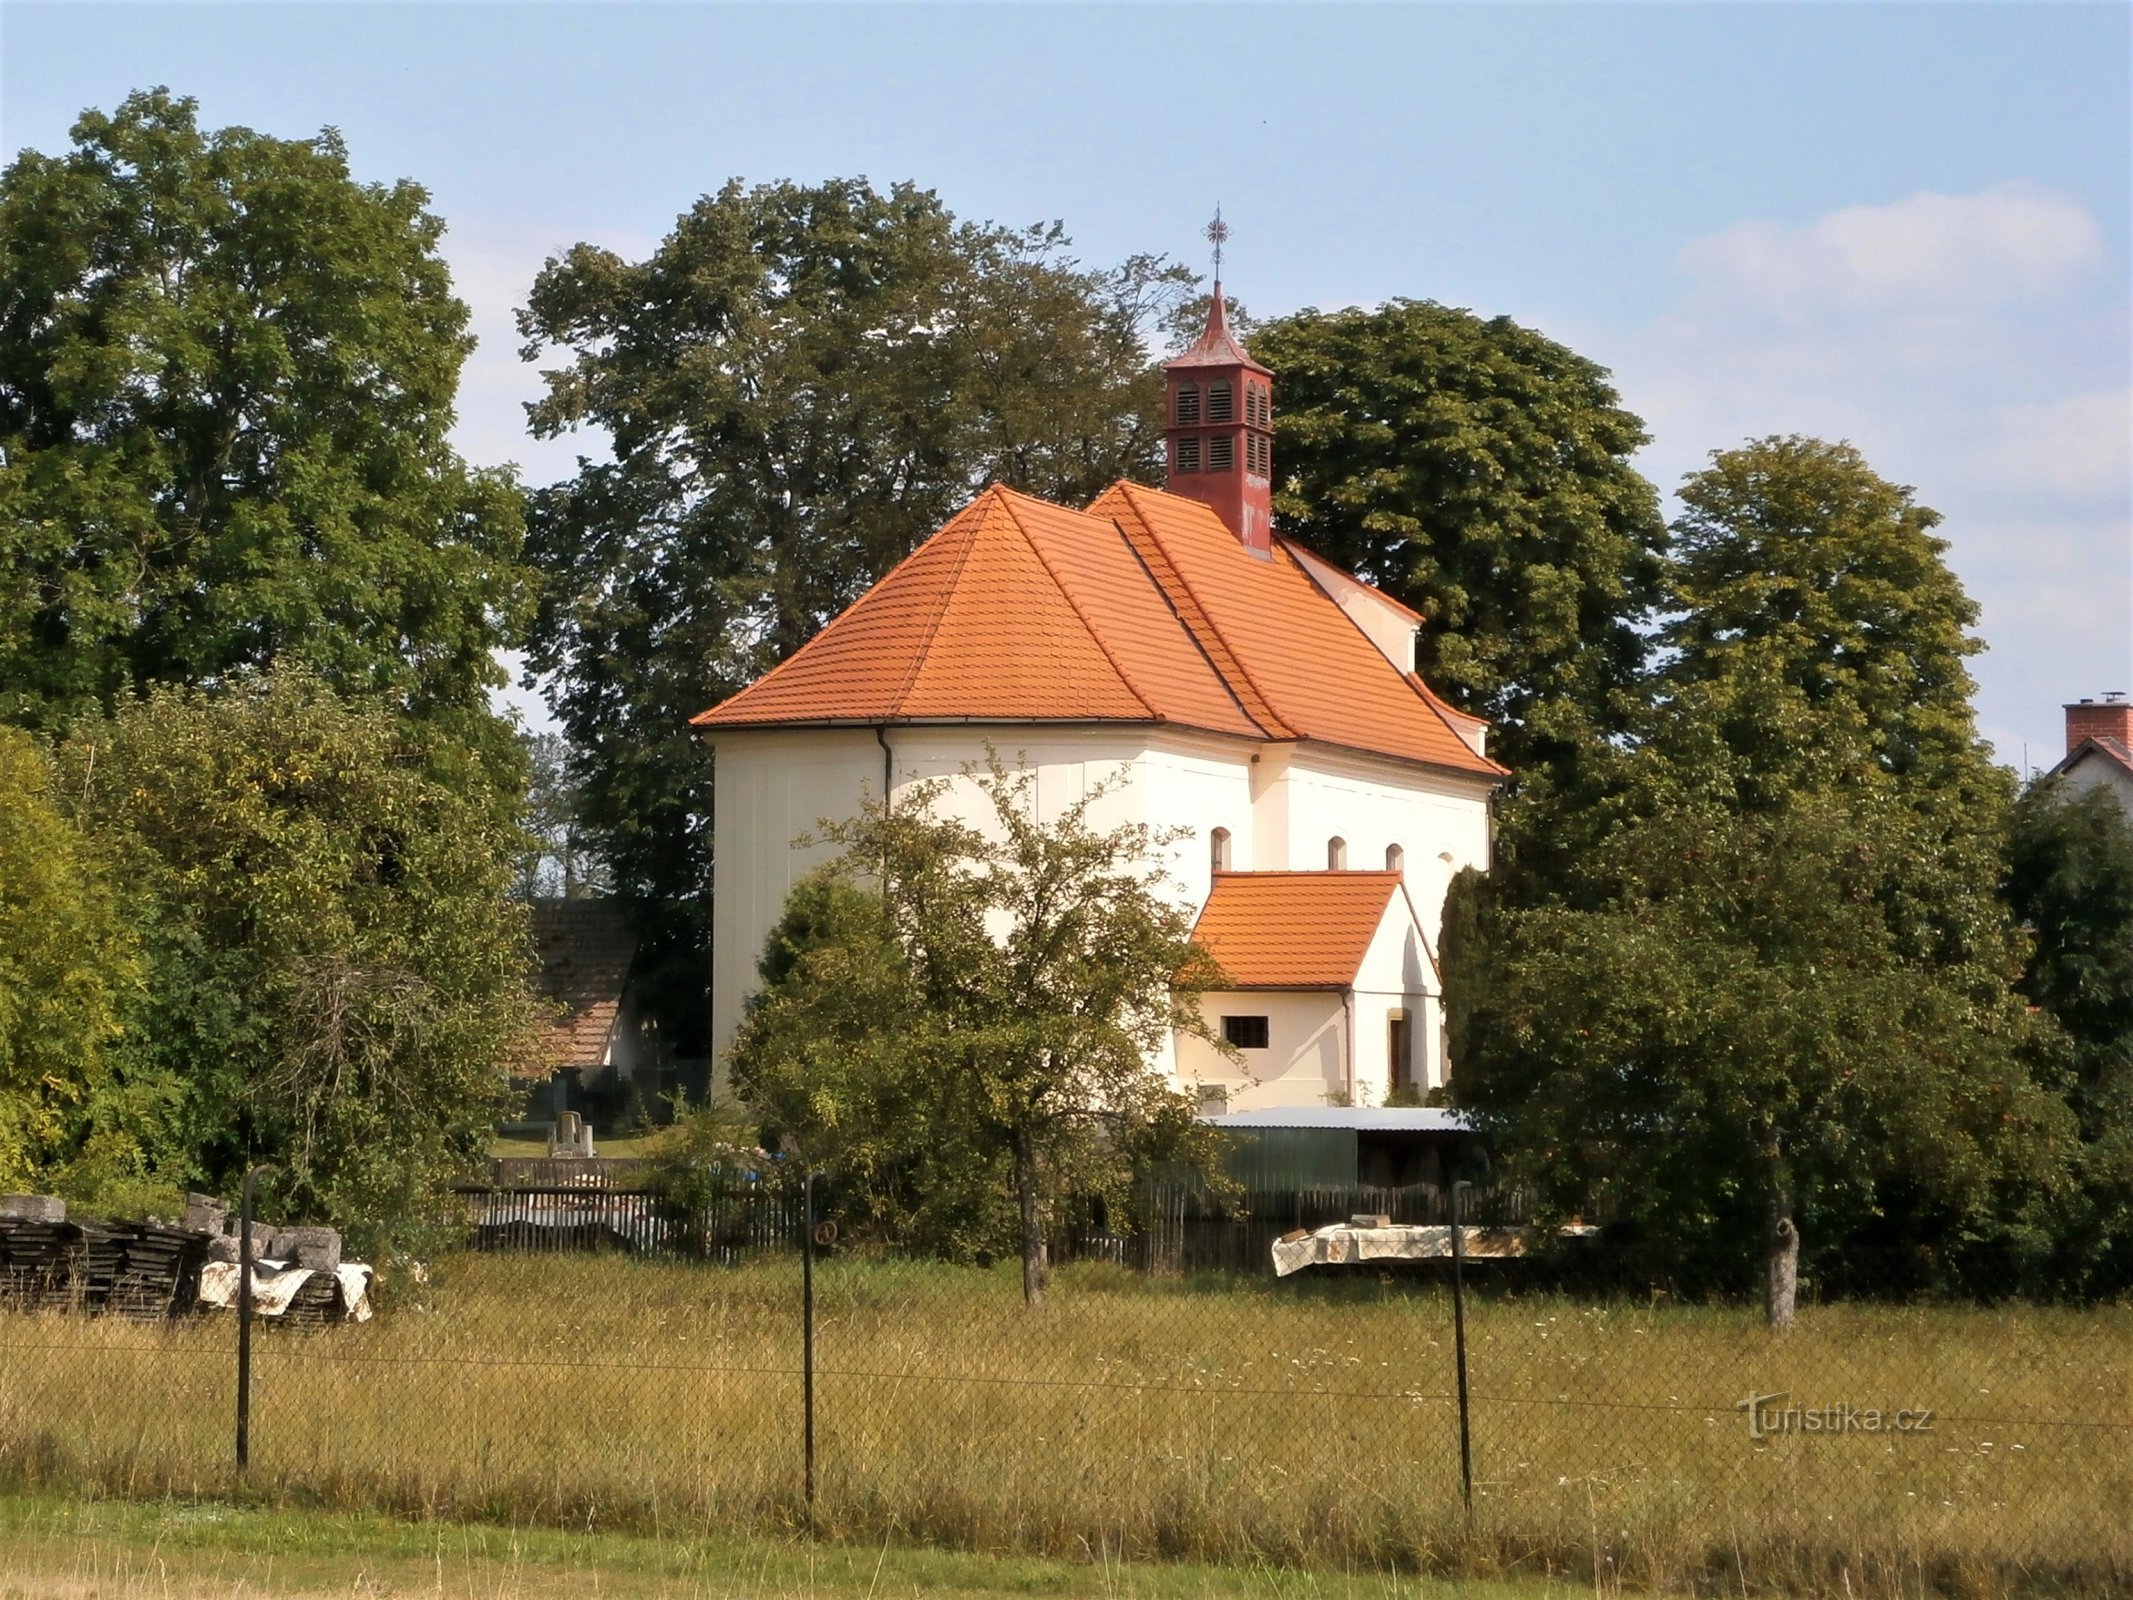 聖母被昇天教会 (Krňovice)